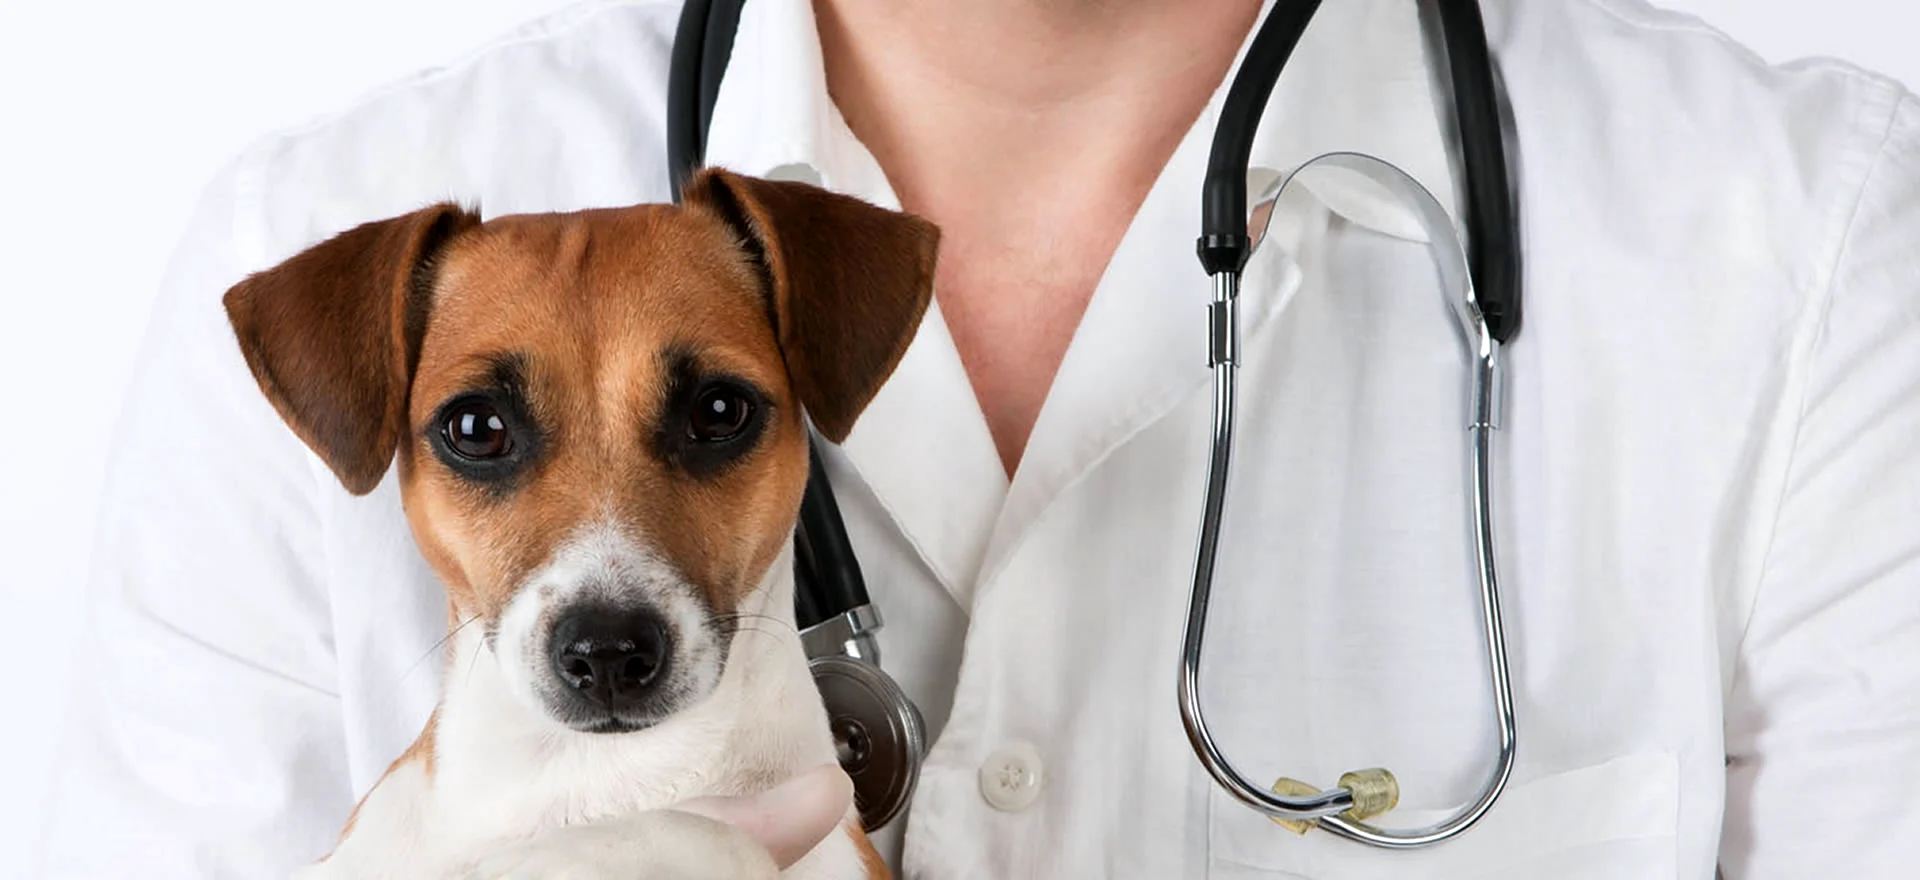 Врачебные ошибки в ветеринарии